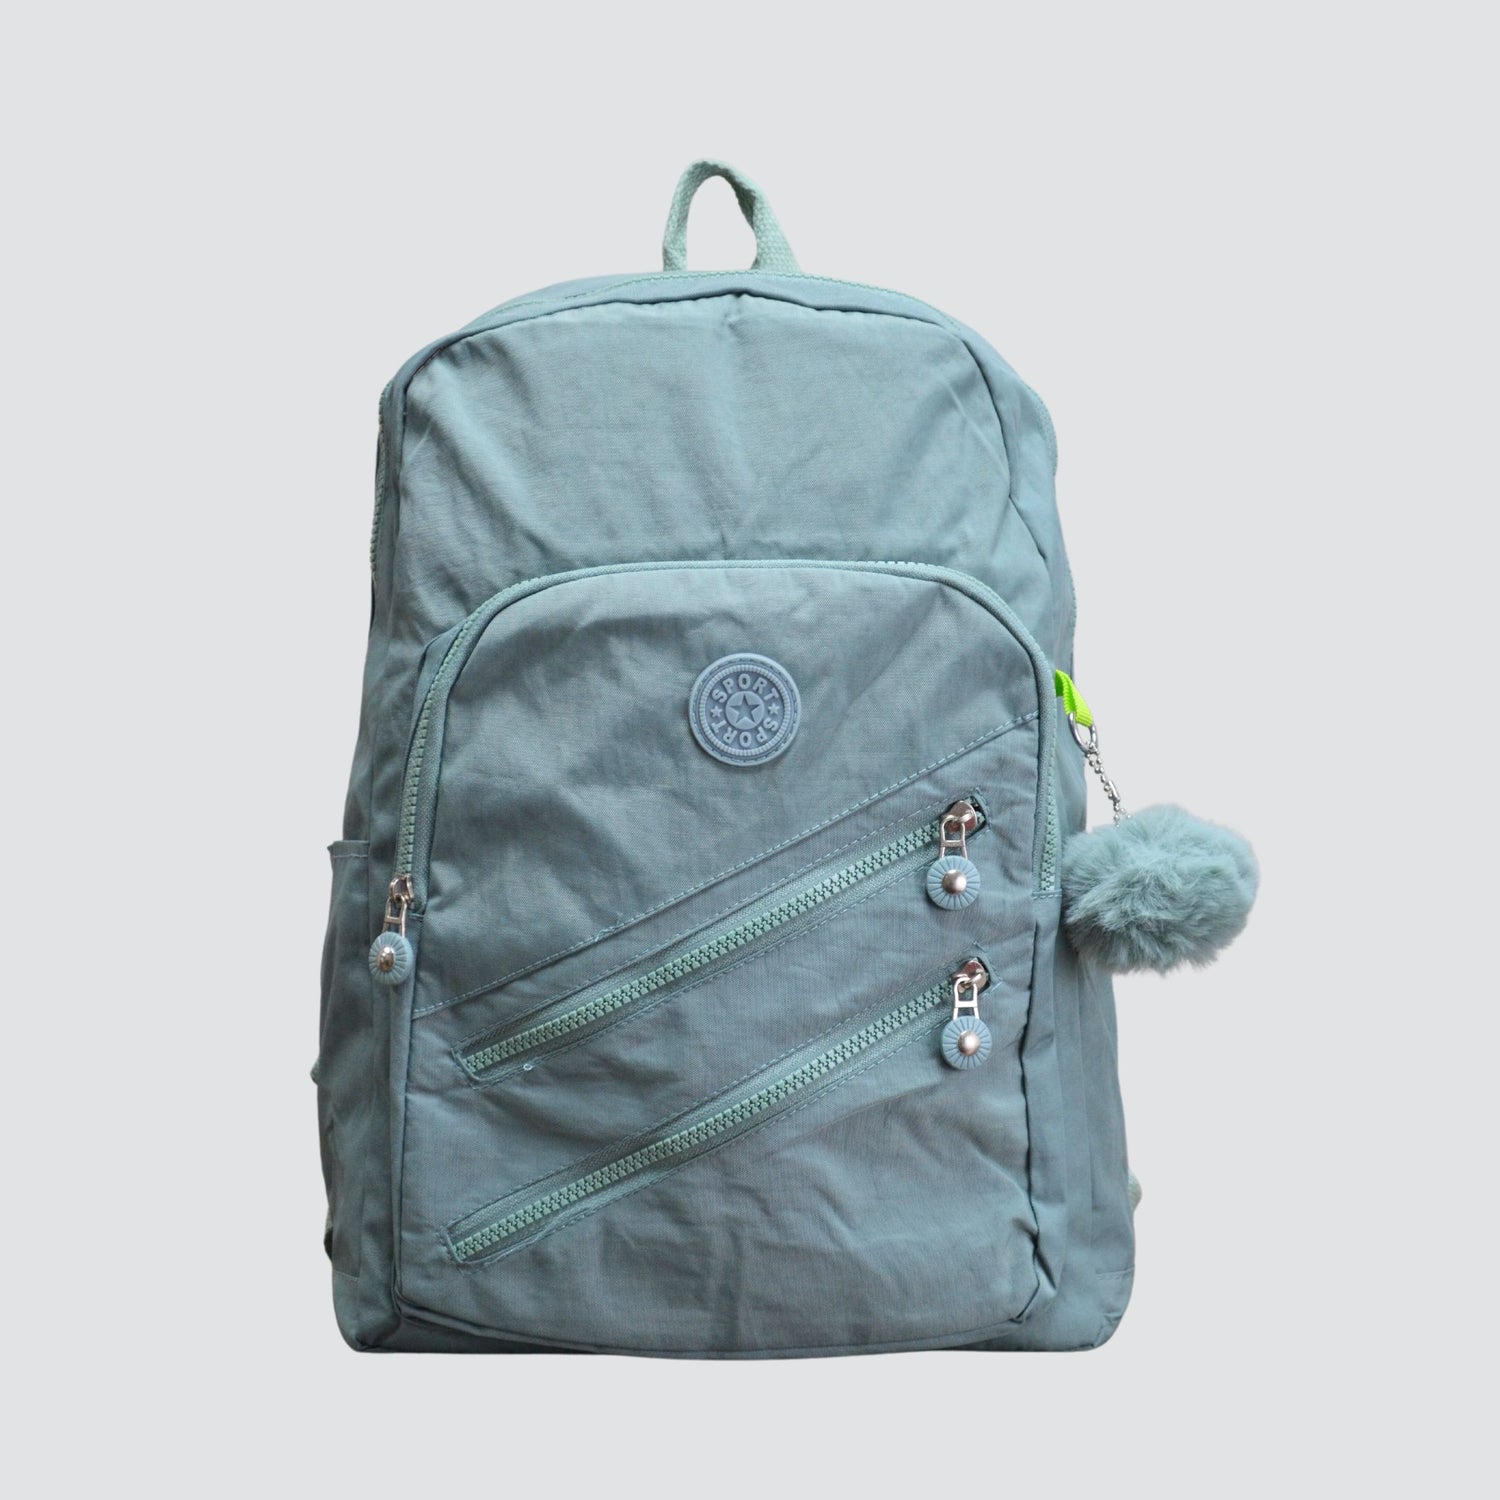 Green Sport Multipurpose Backpack